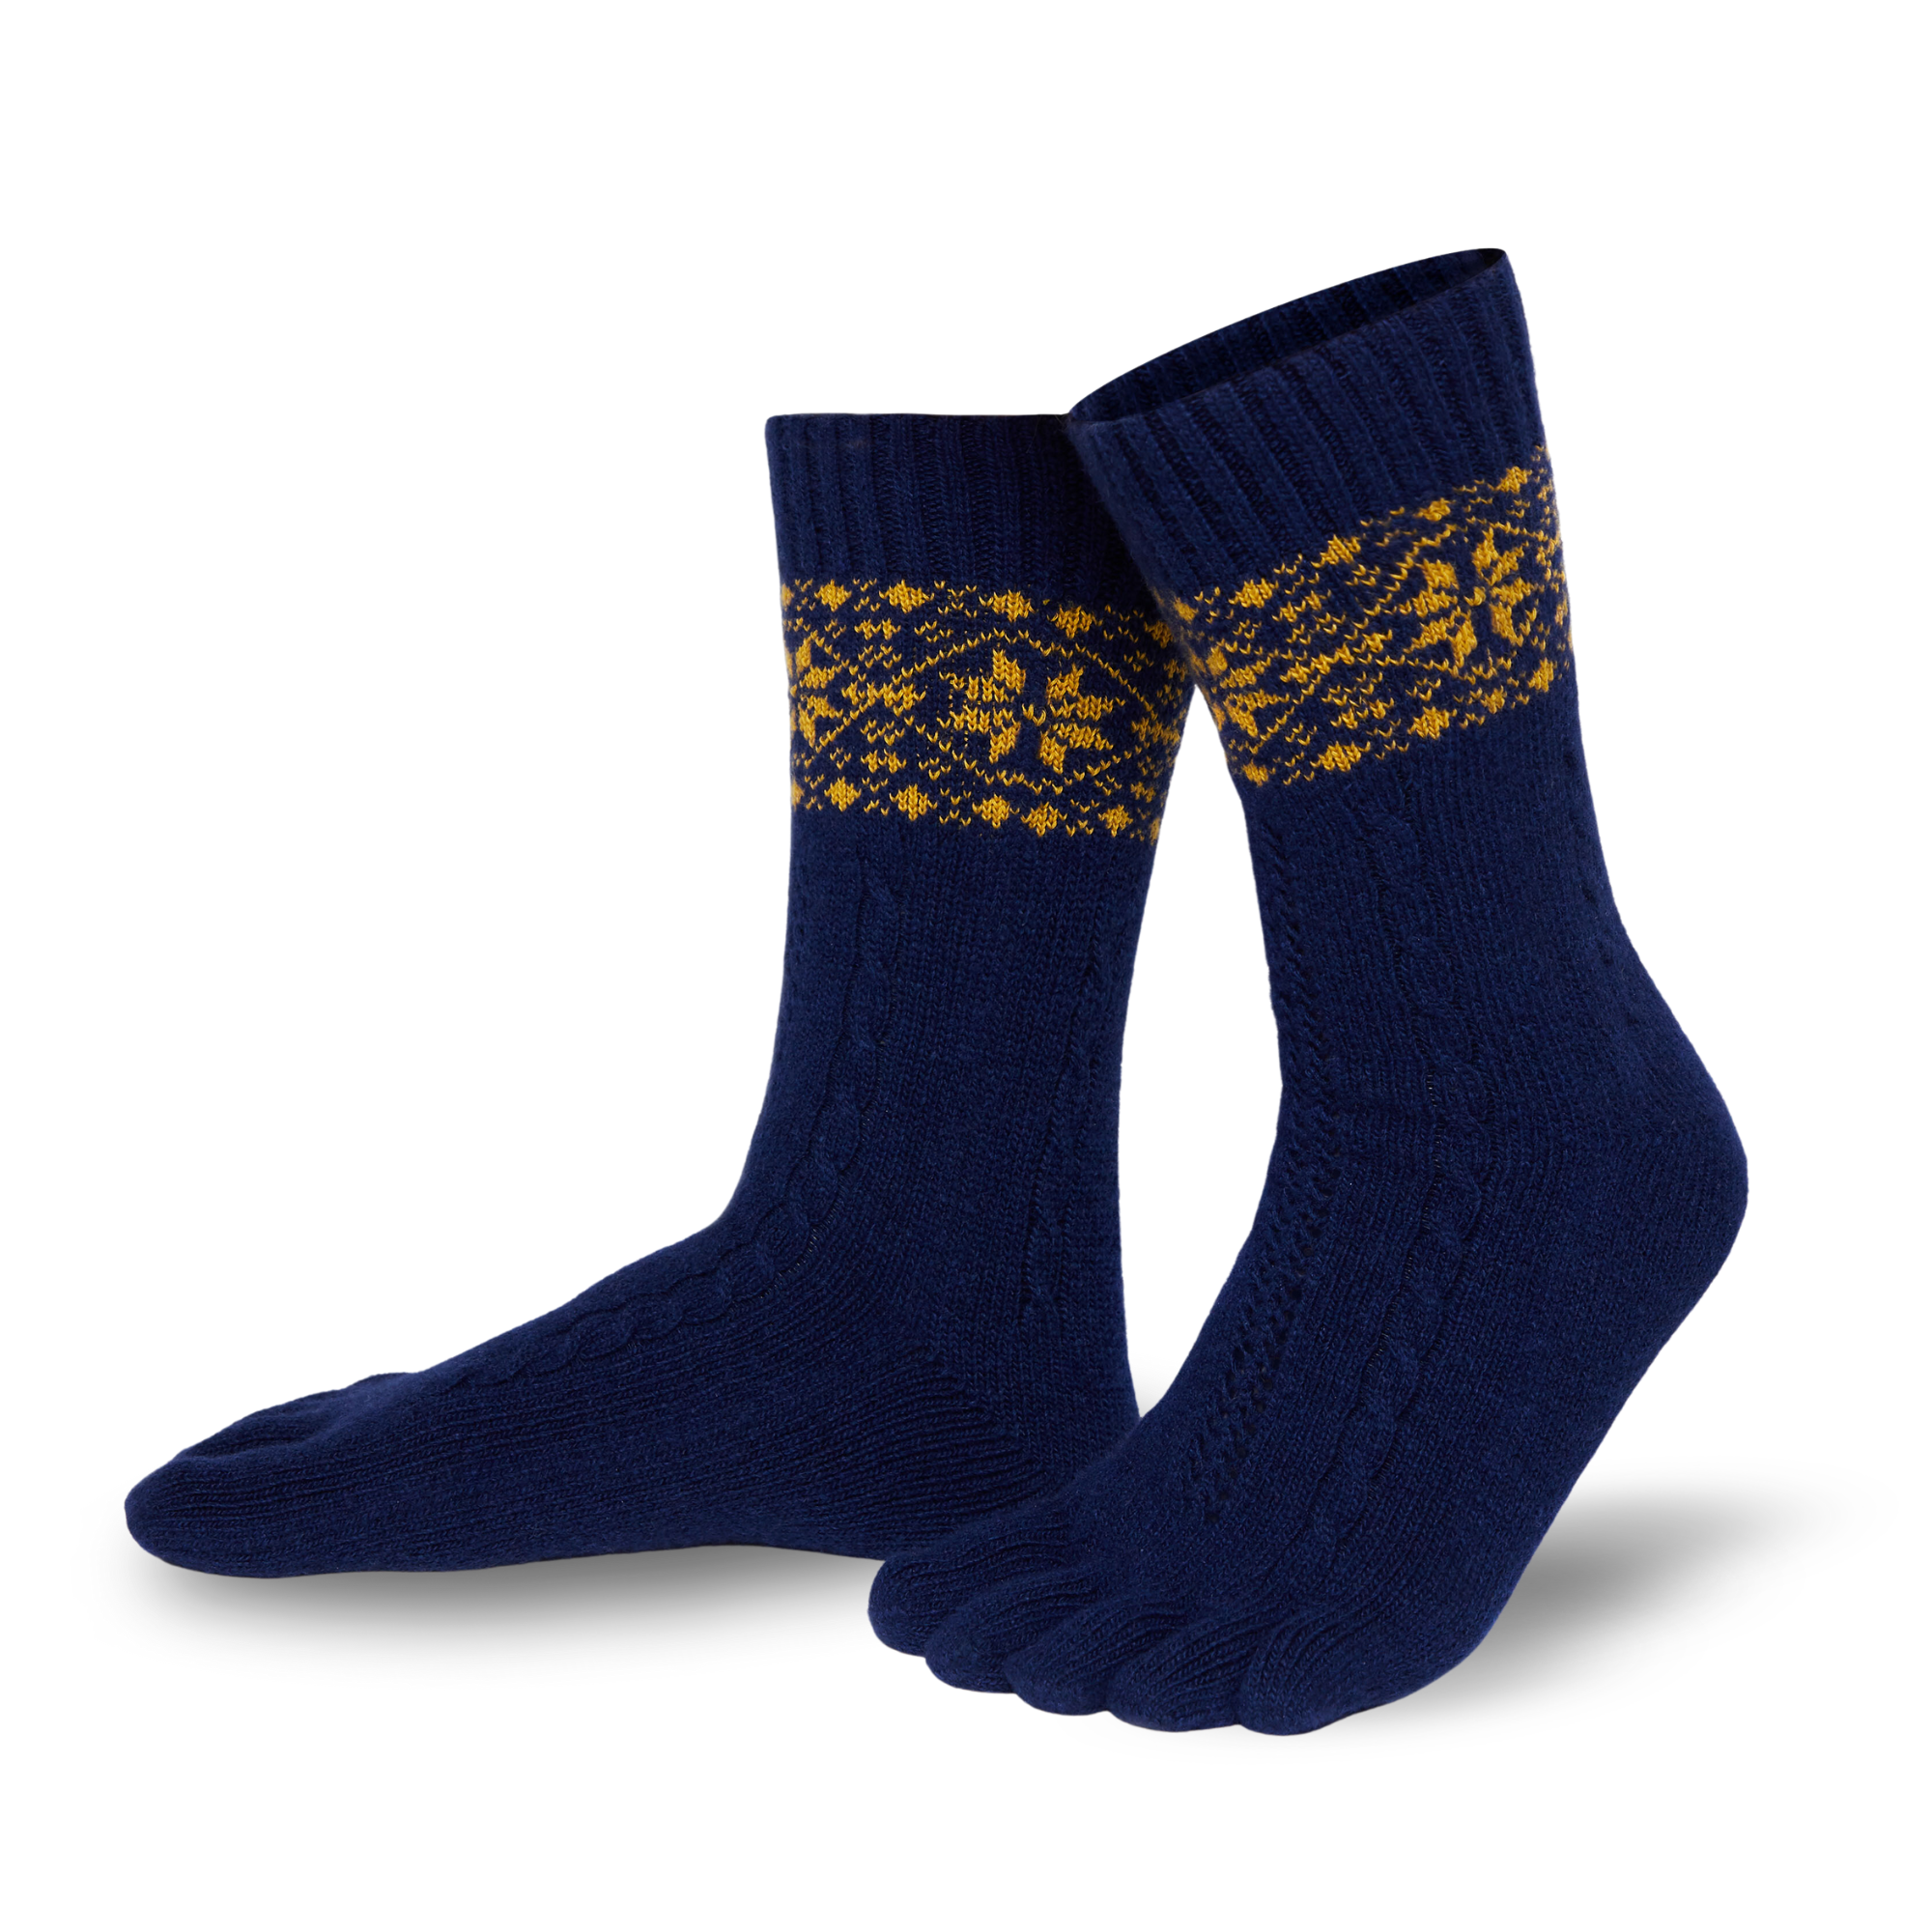 Knitido cálidos calcetines de merino y cachemira con estampado de puntos de nieve en azul marino/dorado